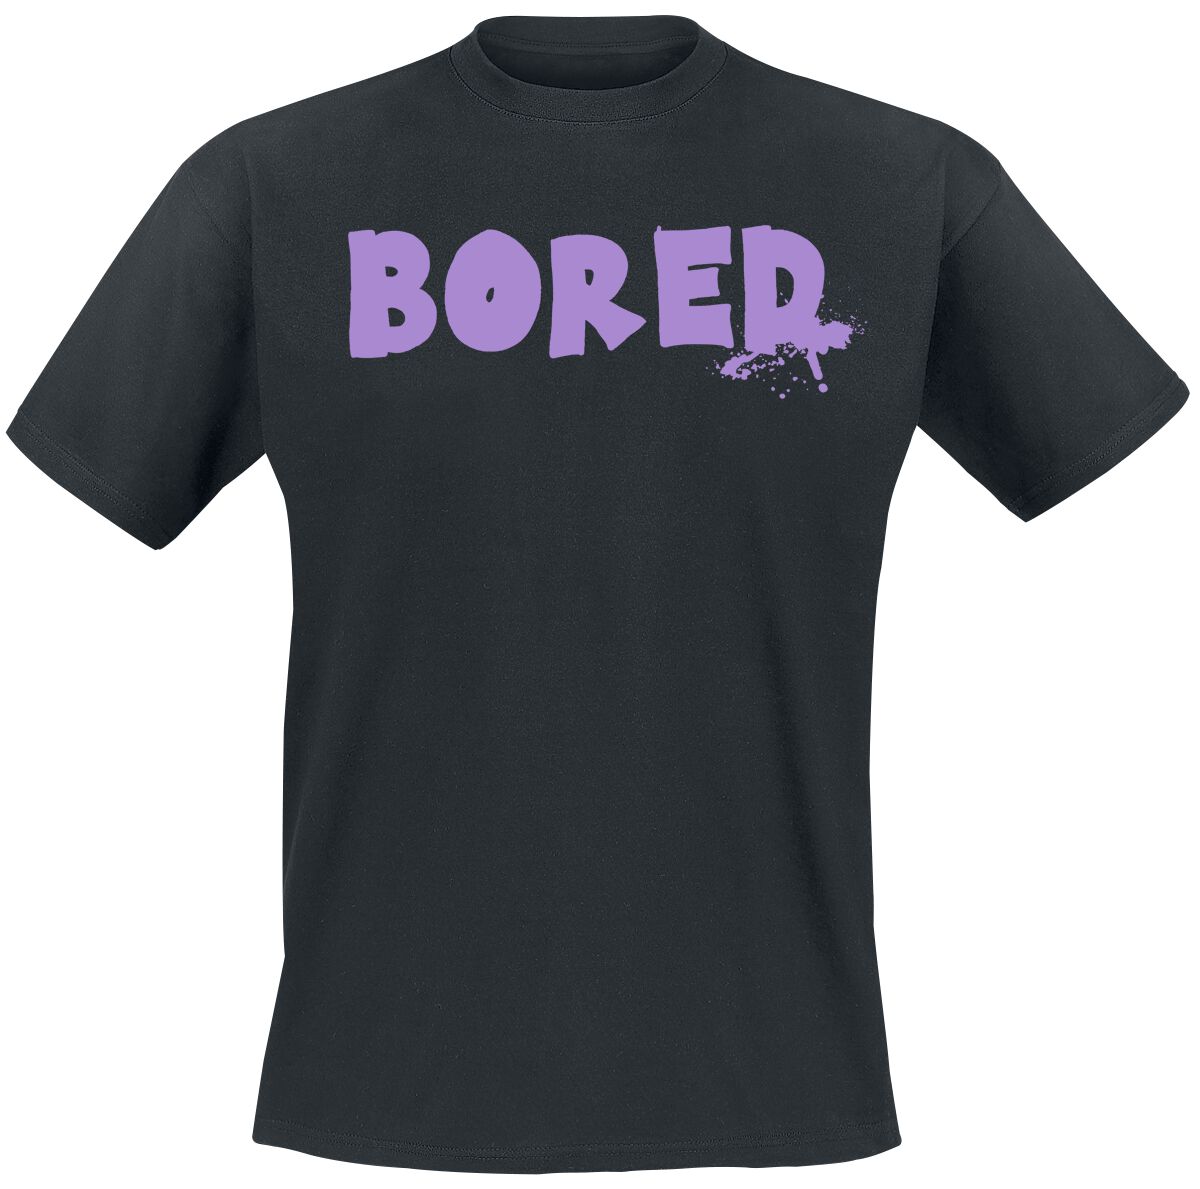 Bored Of Directors T-Shirt - Bored Capeton - S bis XXL - für Männer - Größe L - schwarz  - EMP exklusives Merchandise!